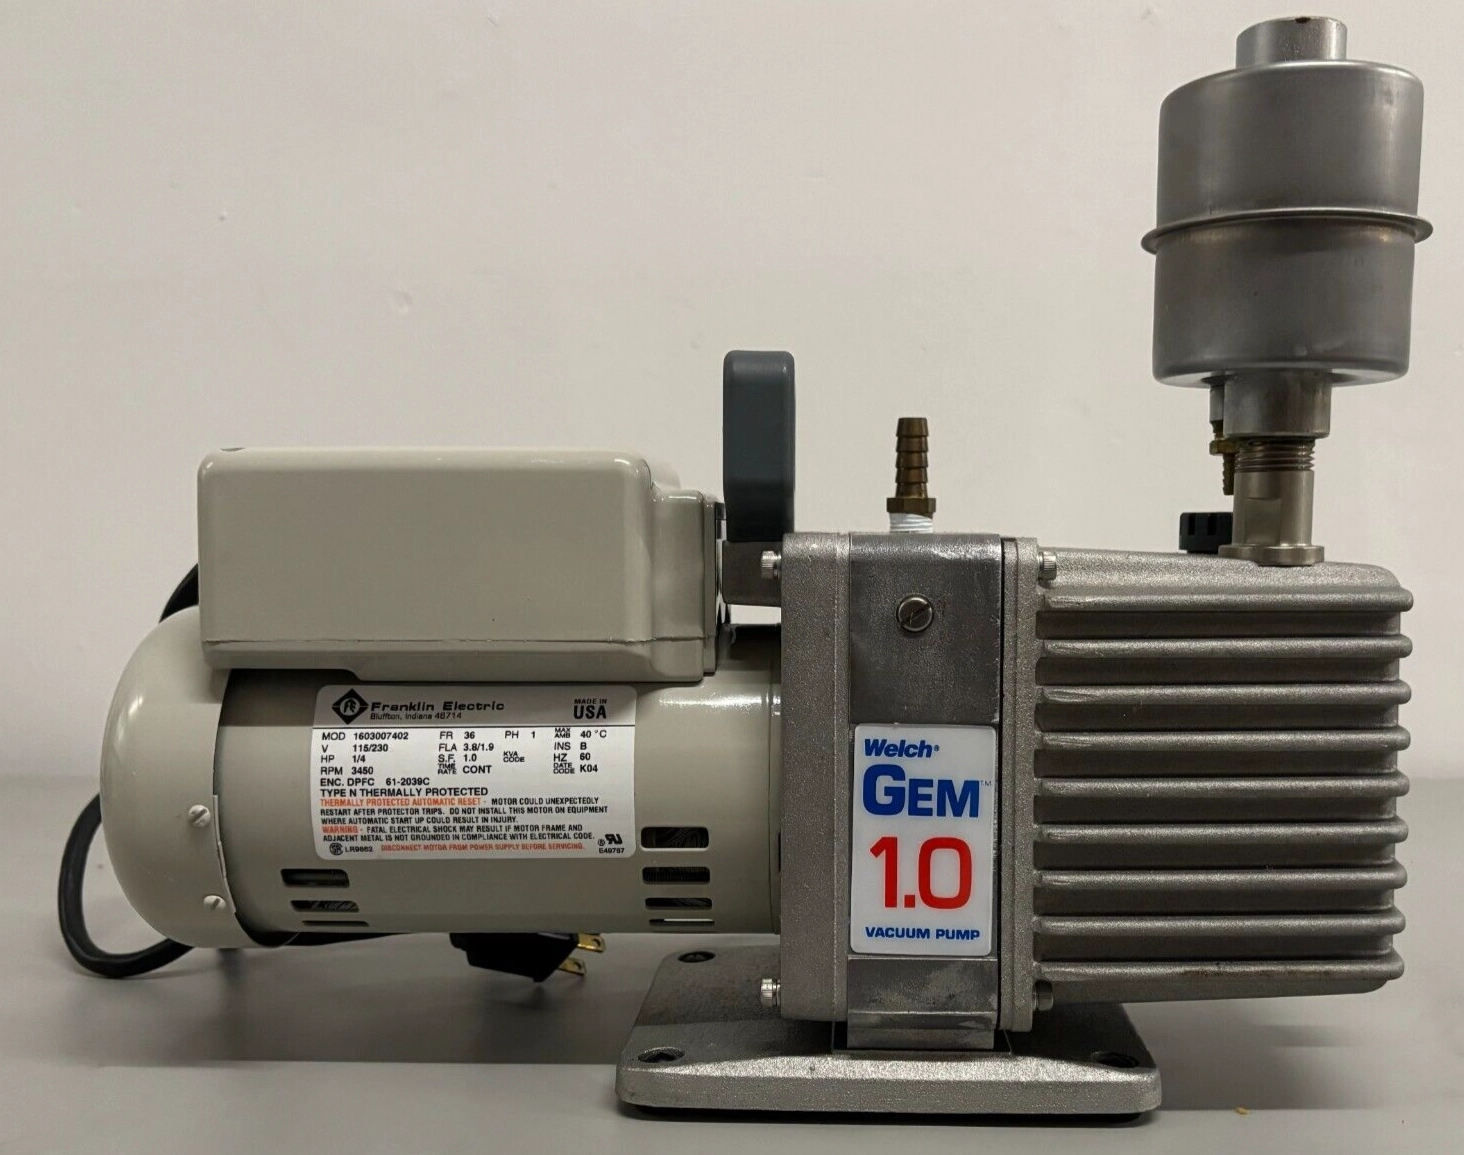 Welch GEM 8890A 1.0 Vacuum Pump